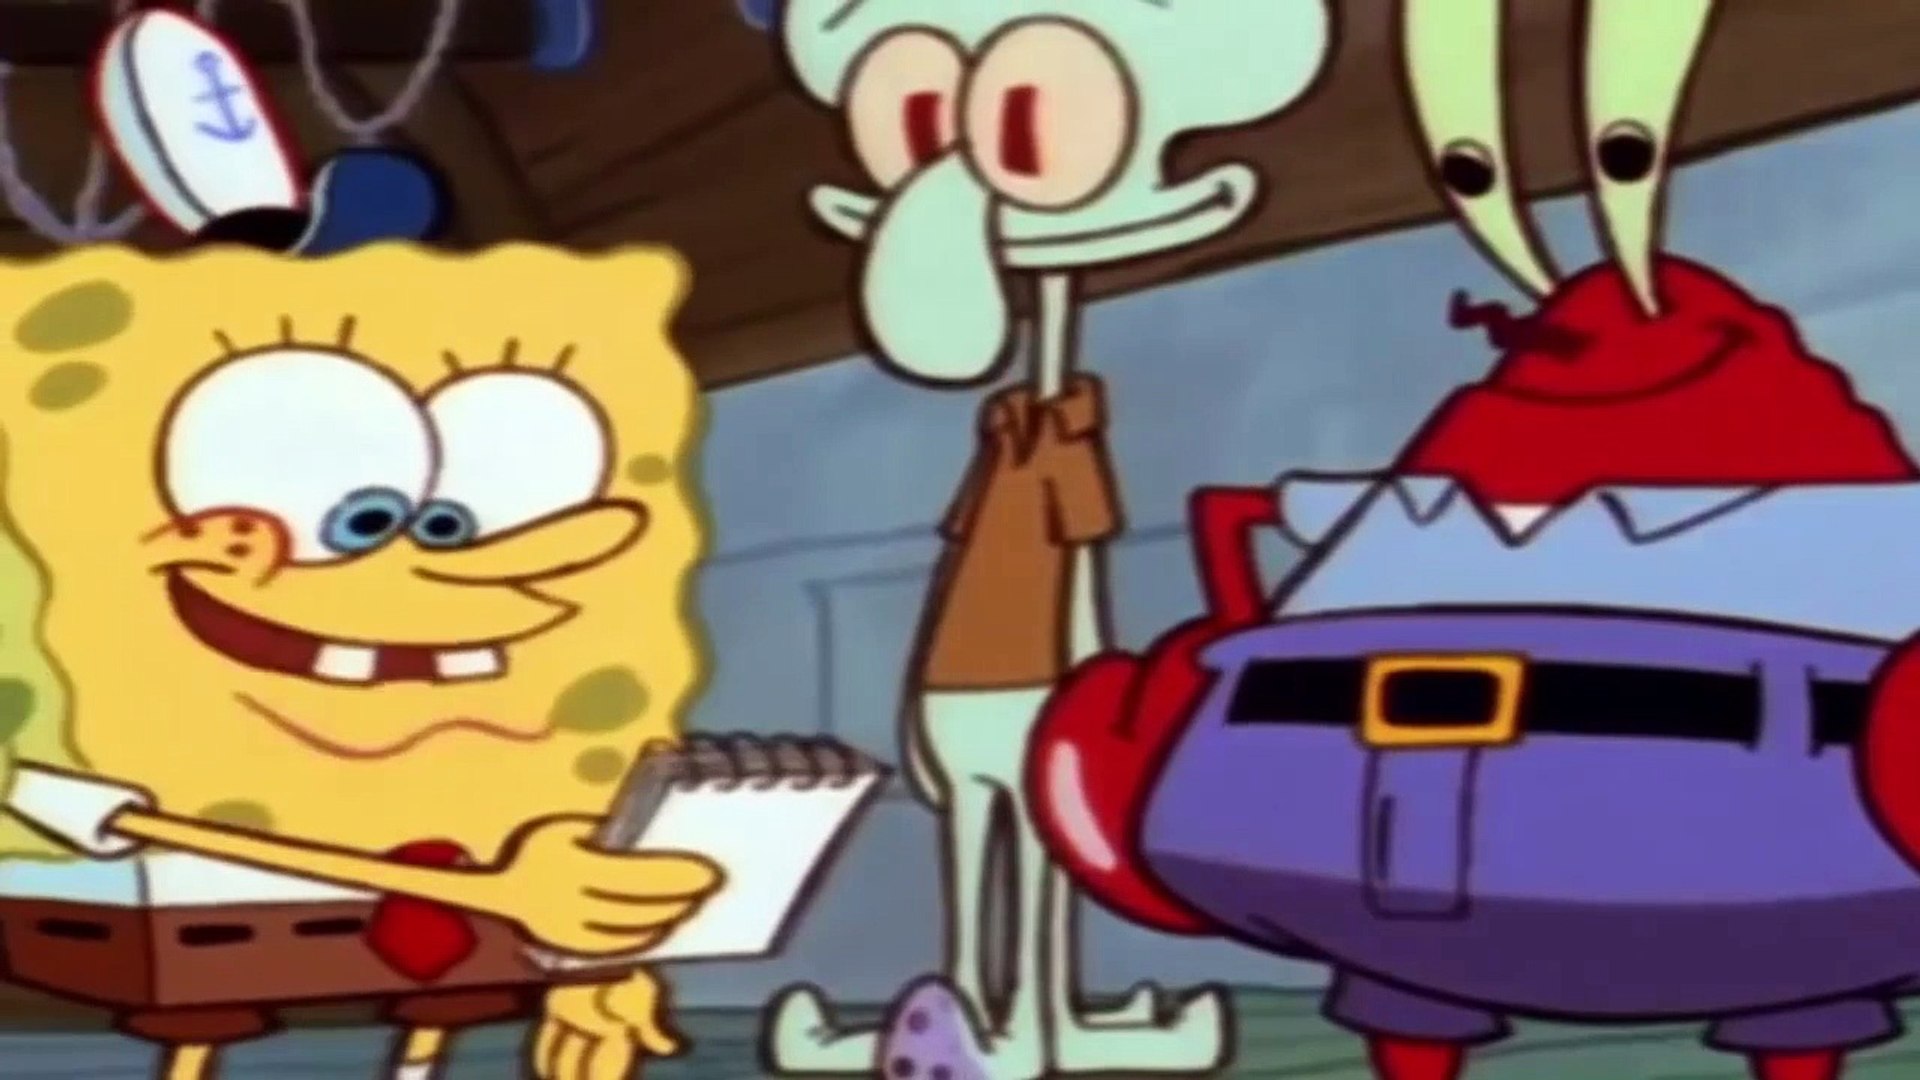 سبونج بوب حلقات جديدة 2019 - العاب كرتون سبونج بوب بالعربي - ساعة كاملة  spongebob squarepants - فيديو Dailymotion